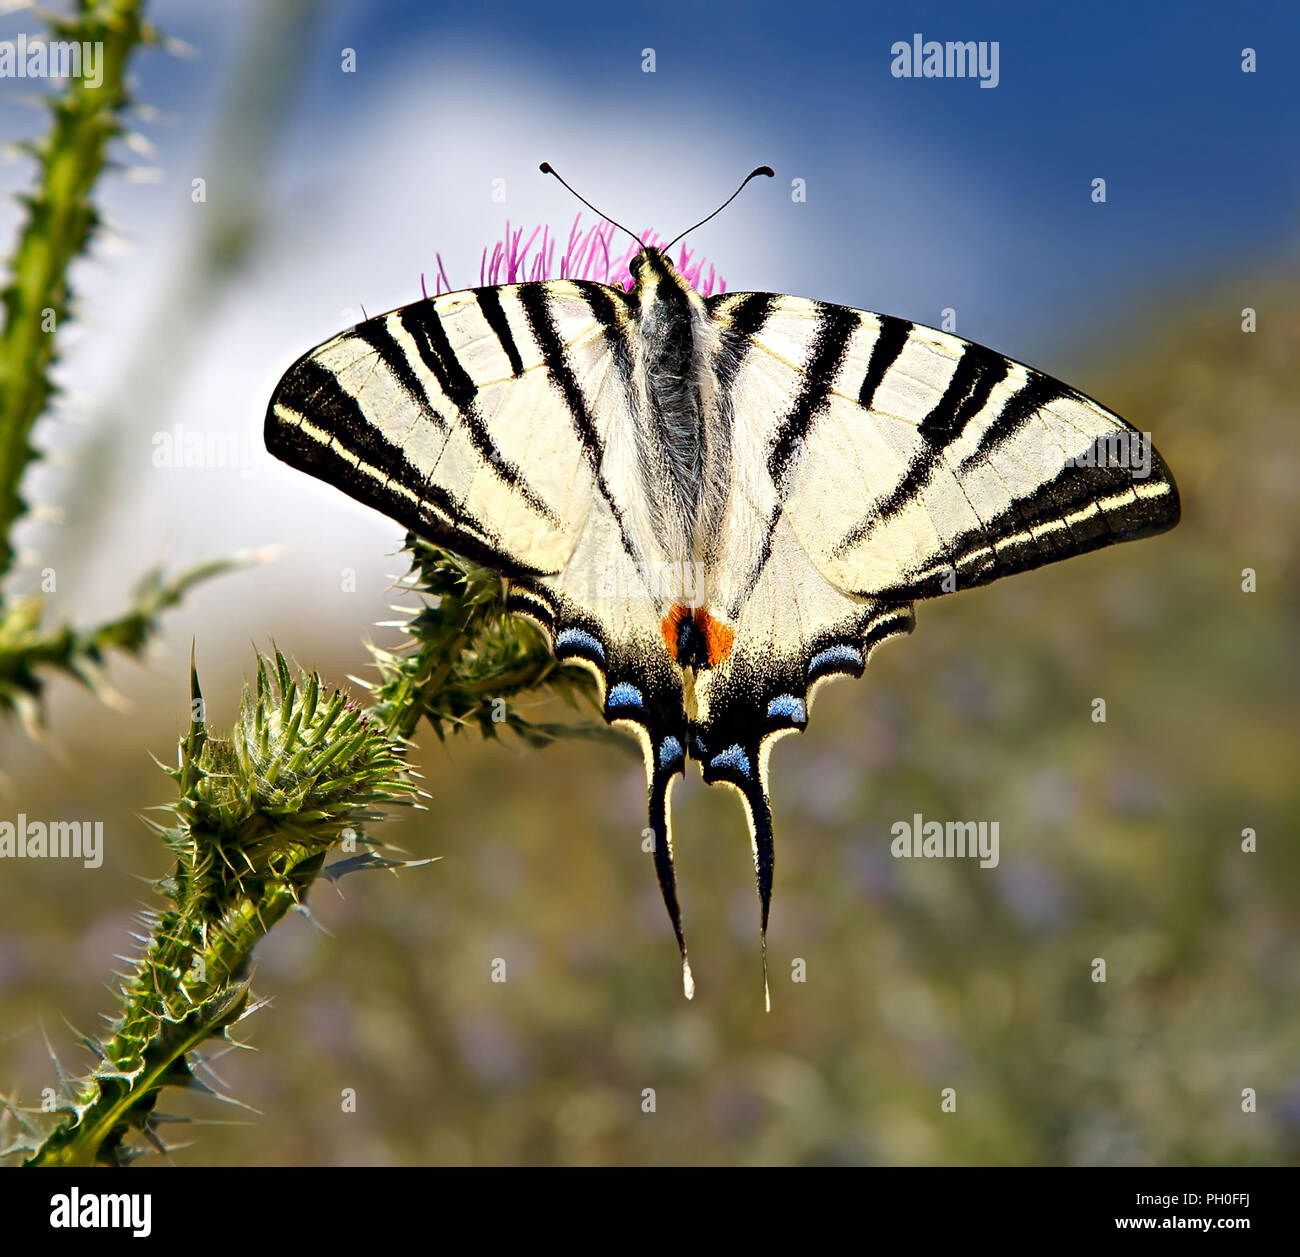 Papilio podalirius ou rare swallowtail butterfly sur une prairie en fleurs, au sud de la Russie. Autre nom de ce papillon : Iphiclides podalirius. Banque D'Images